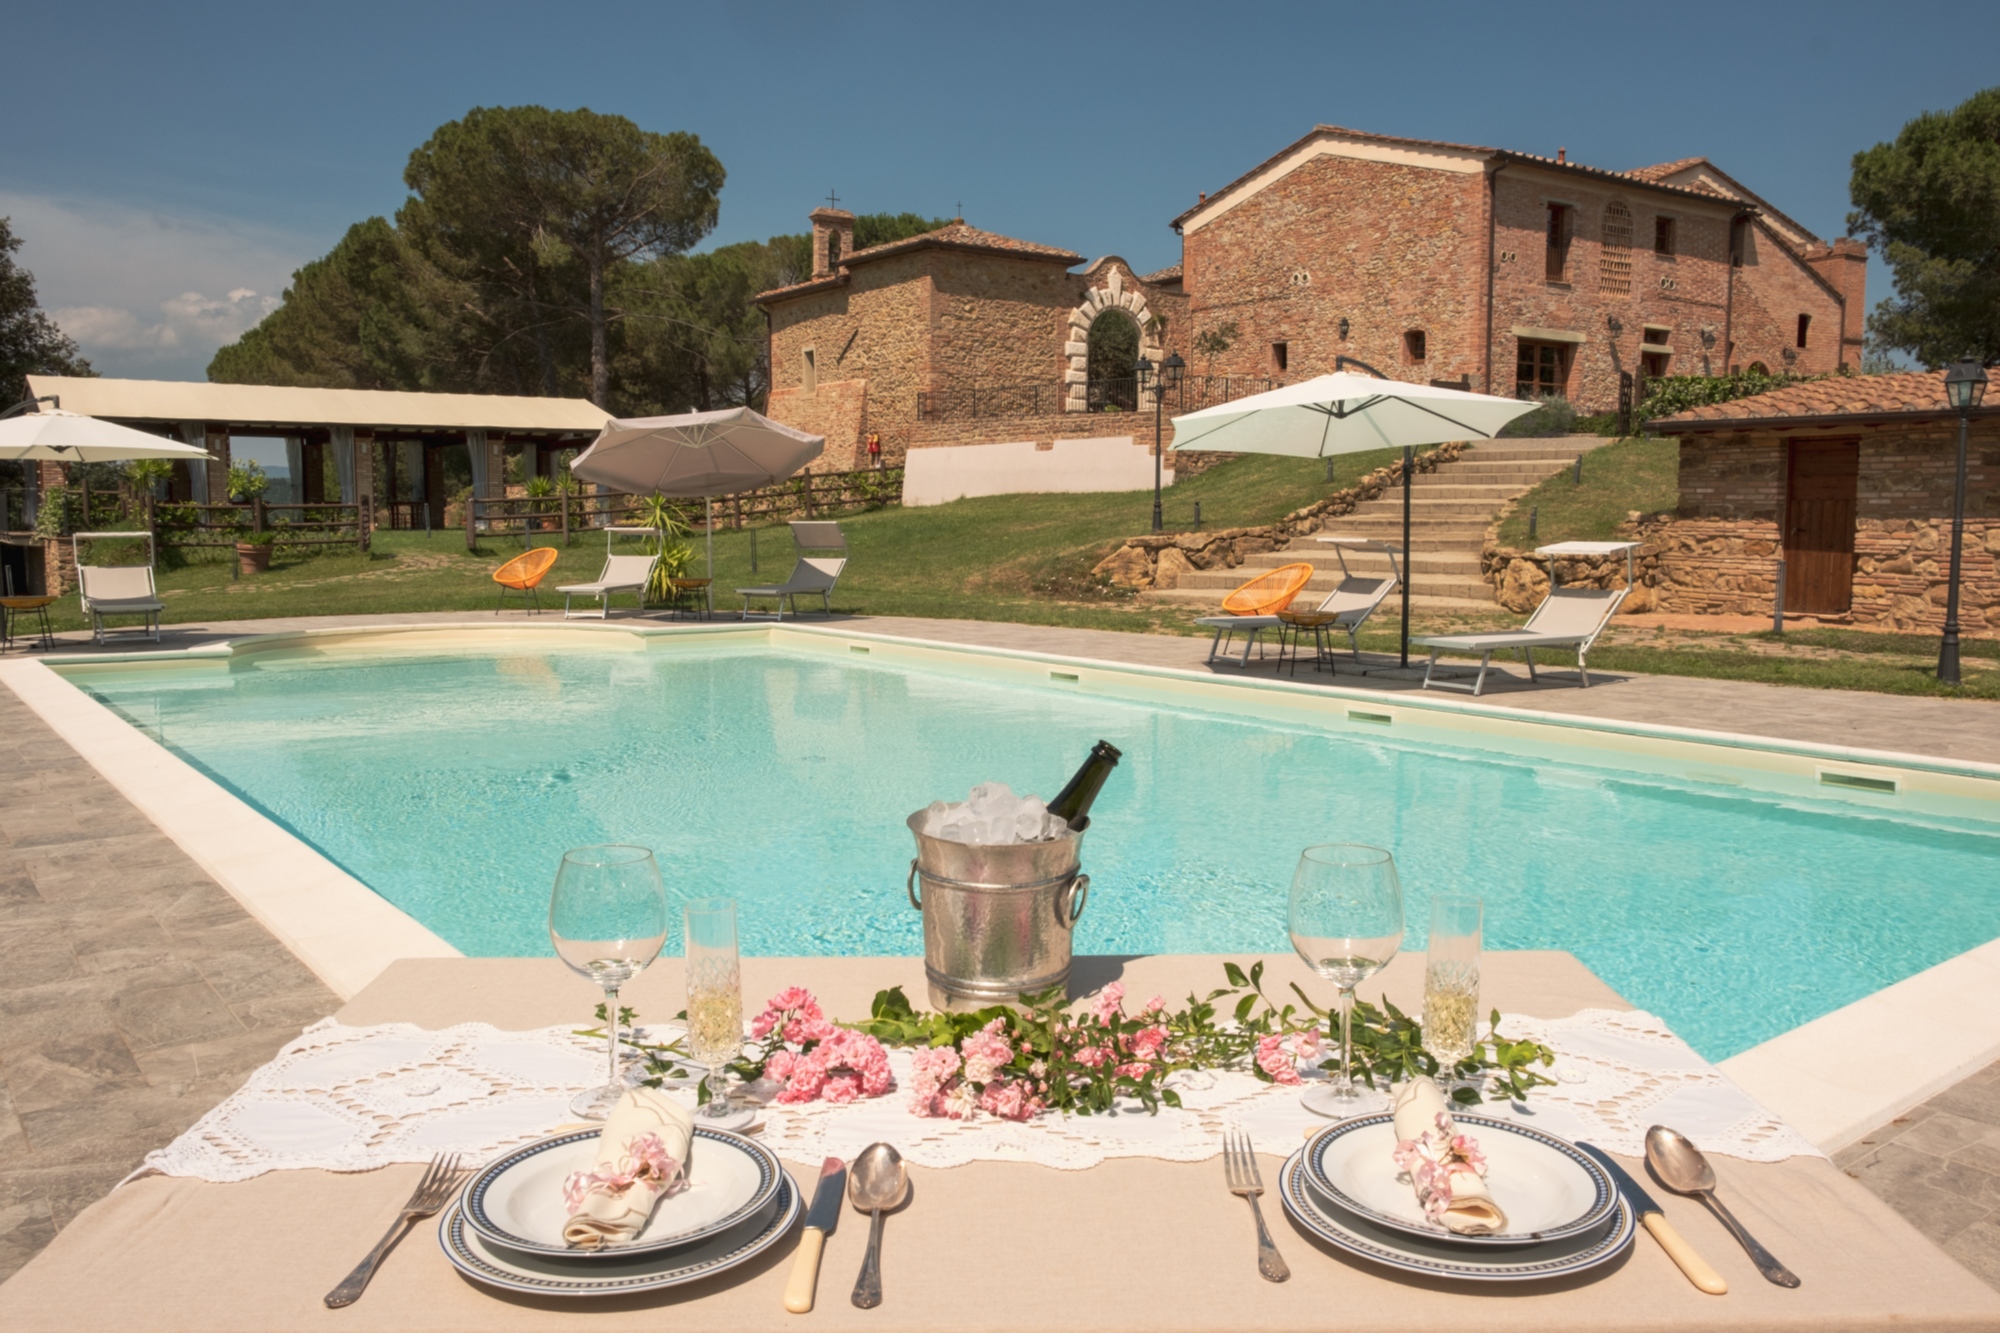  La piscina dell'agriturismo offre la possibilità di rilassarsi e degustare vino e prodotti tipici toscani, nella campagna di Pisa